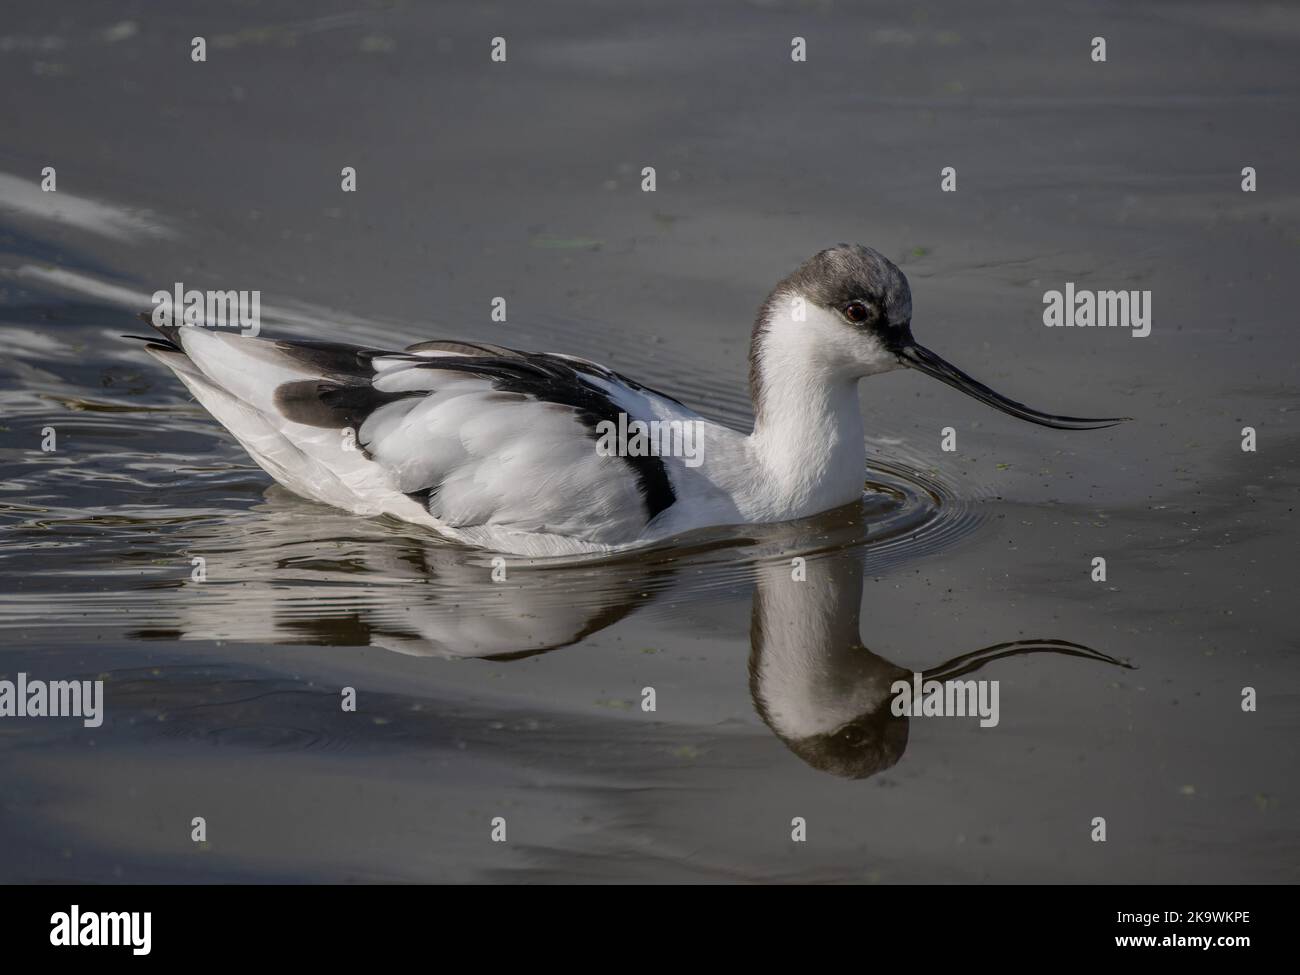 Avocet, Recurvirostra avosetta, swimming on surface of coastal lagoon. Stock Photo